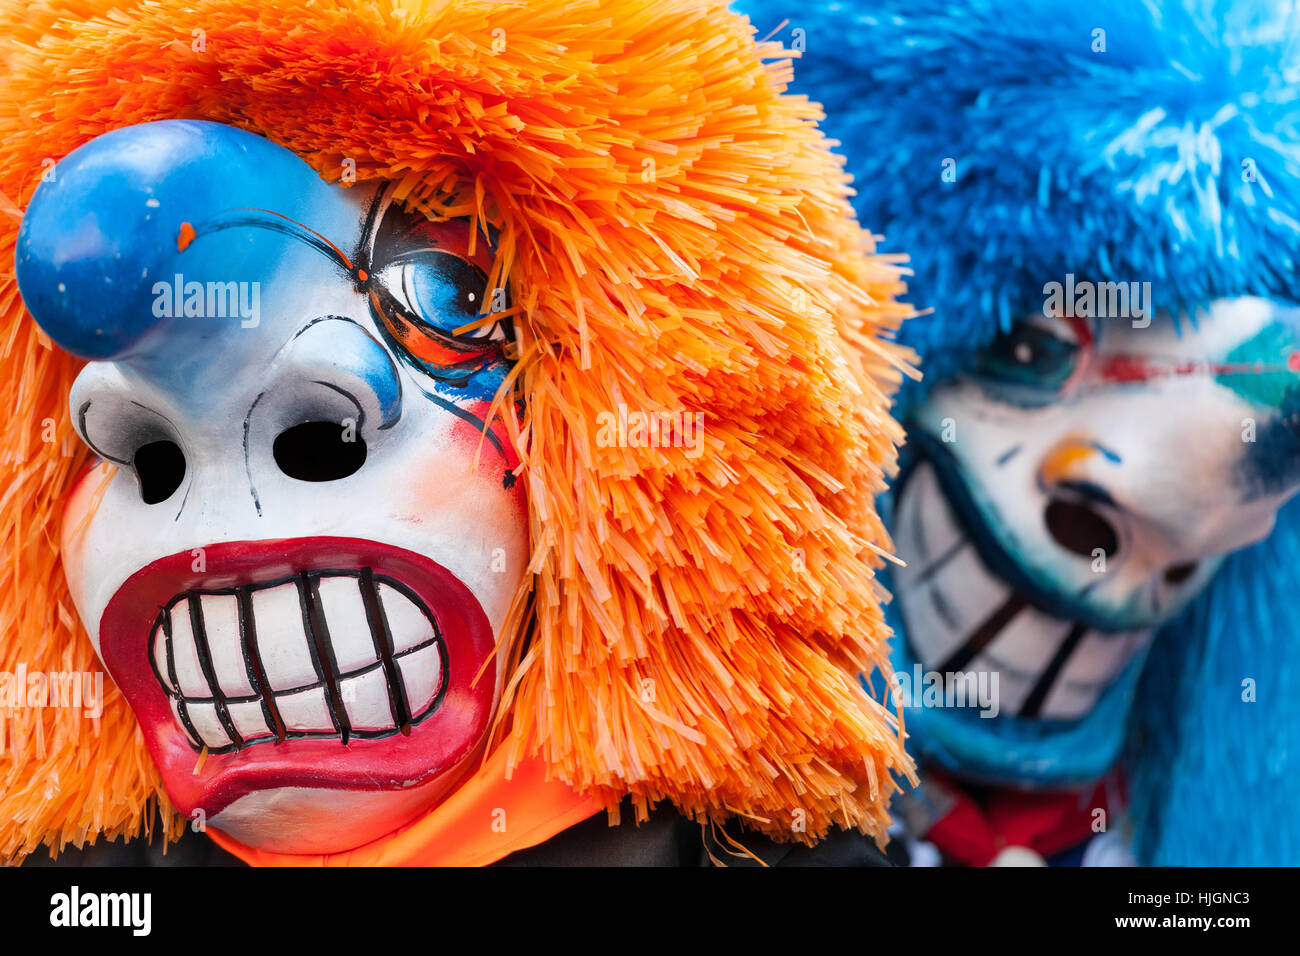 Zwei traditionelle Waggis Masken mit orangenen und blauen Haaren an  Fasnacht Festival Basel, Schweiz Stockfotografie - Alamy